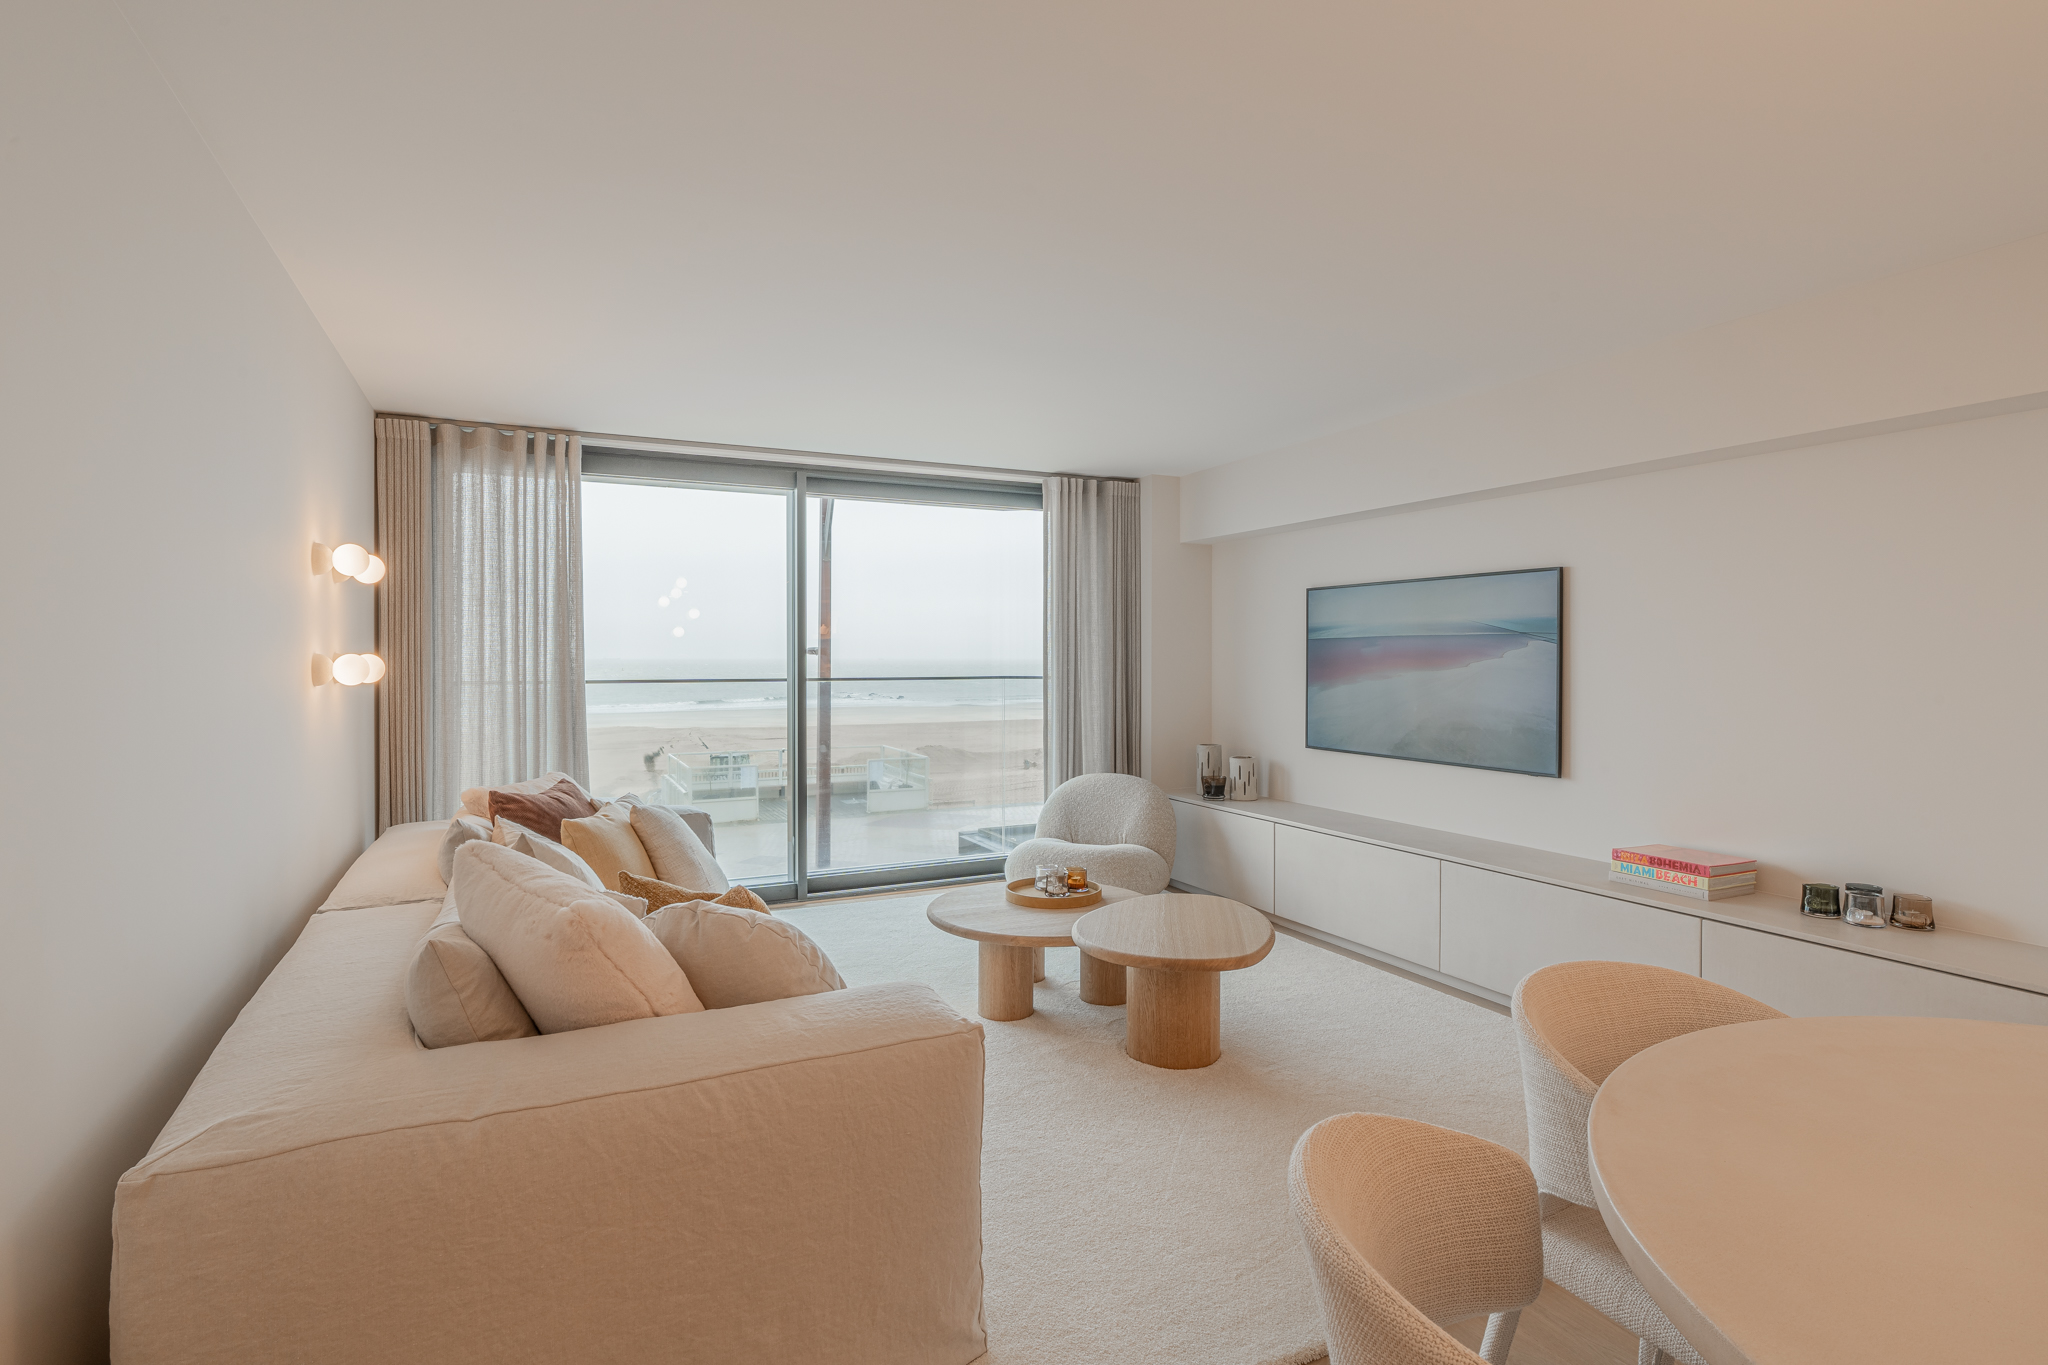 IDEALIS VASTGOED - Exclusief, volledig gerenoveerd én gemeubeld appartement, gelegen op een prachtige locatie op de zeedijk in het Zoute met frontaal zeezicht! foto 1